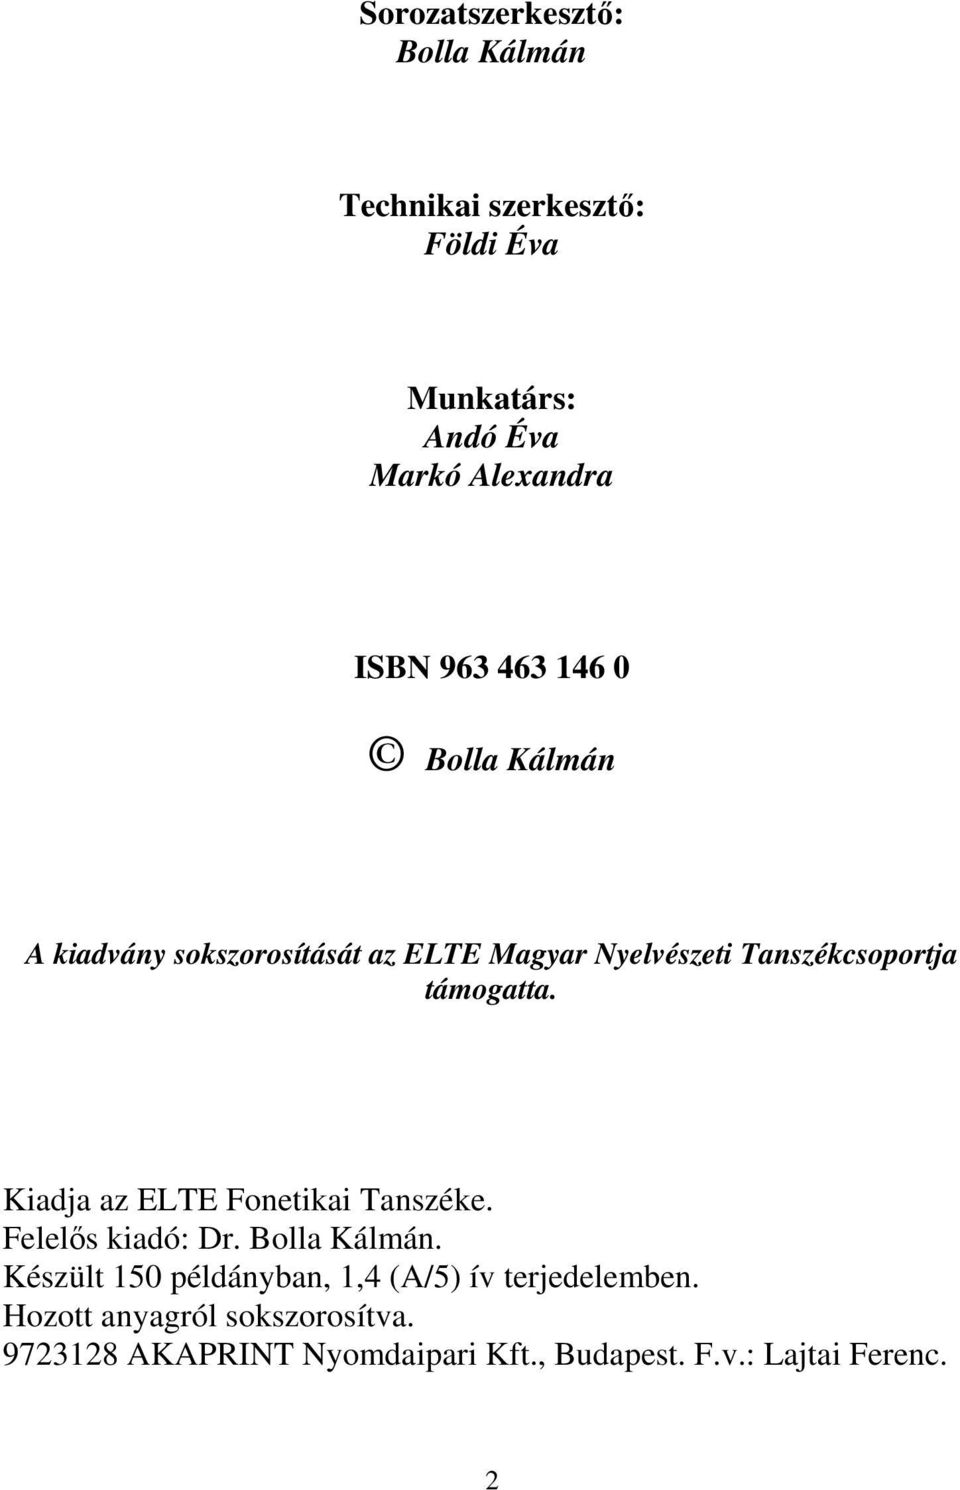 Kiadja az ELTE Fonetikai Tanszéke. Felelős kiadó: Dr. Bolla Kálmán.